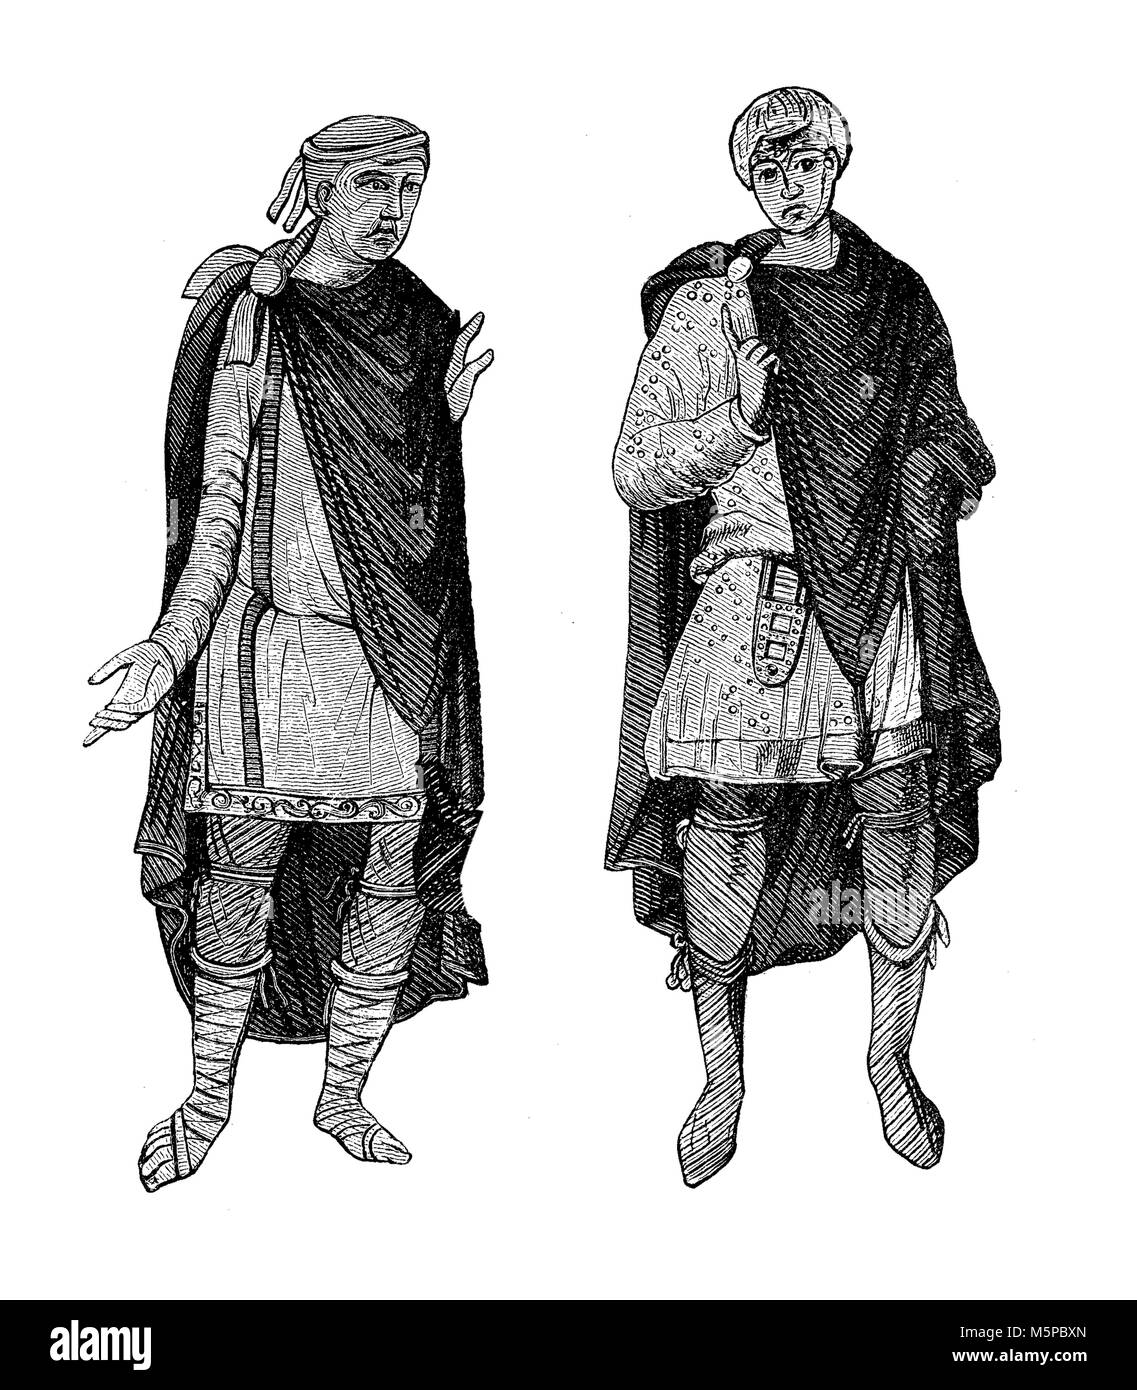 L'allemand costumes de V à VIII siècle : tunique courte, mantel, breies accroché au genou ou mi-mollet et des chaussures ou bottes en cuir Banque D'Images